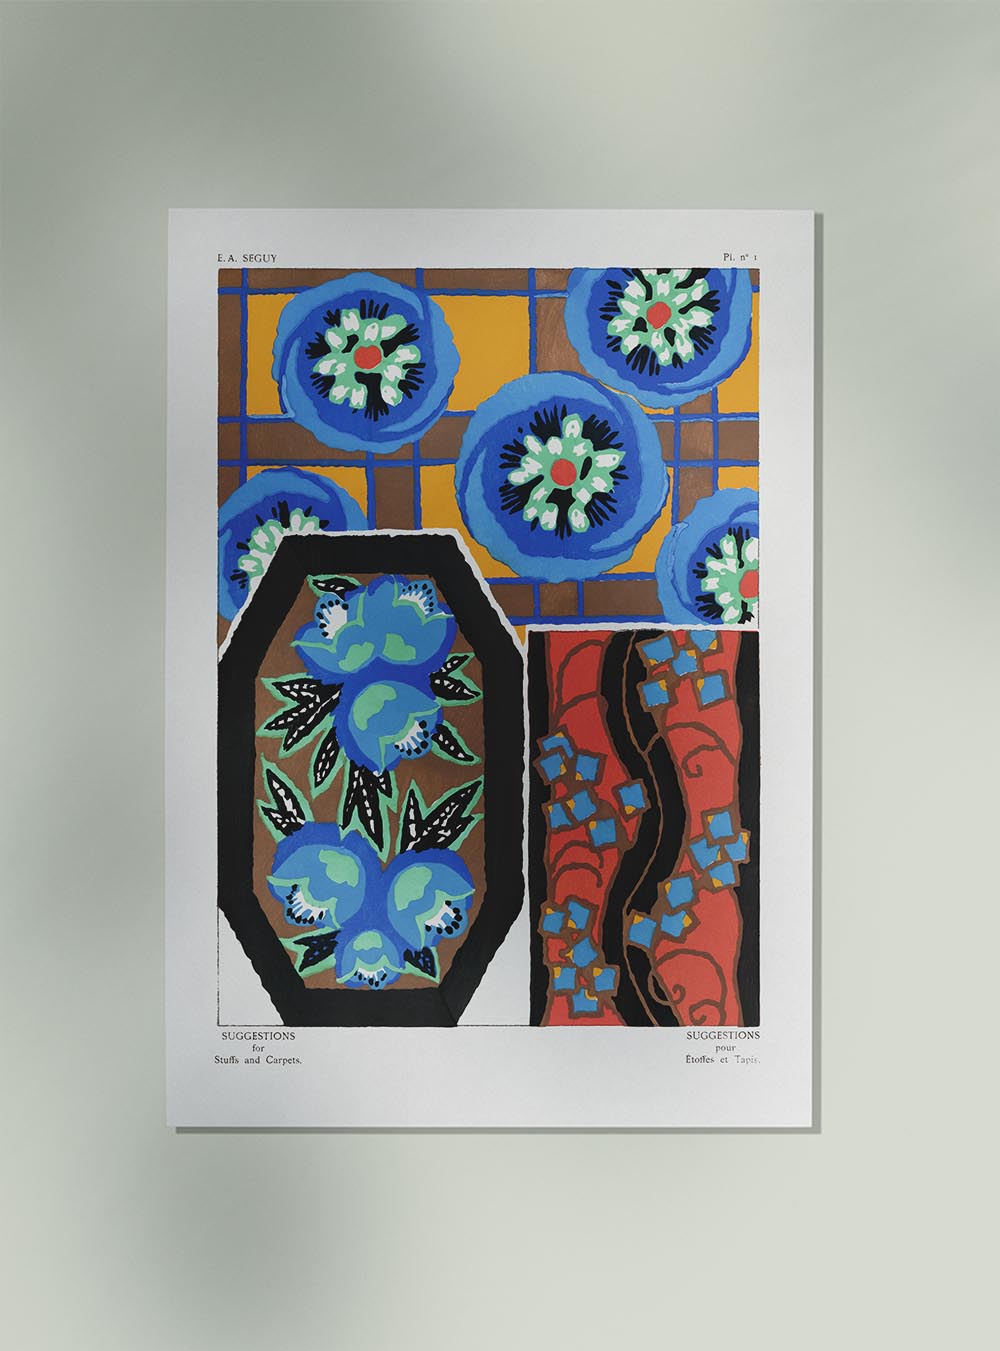 Vintage Flower Patterns Plate Nr.1 by E.A. Séguy